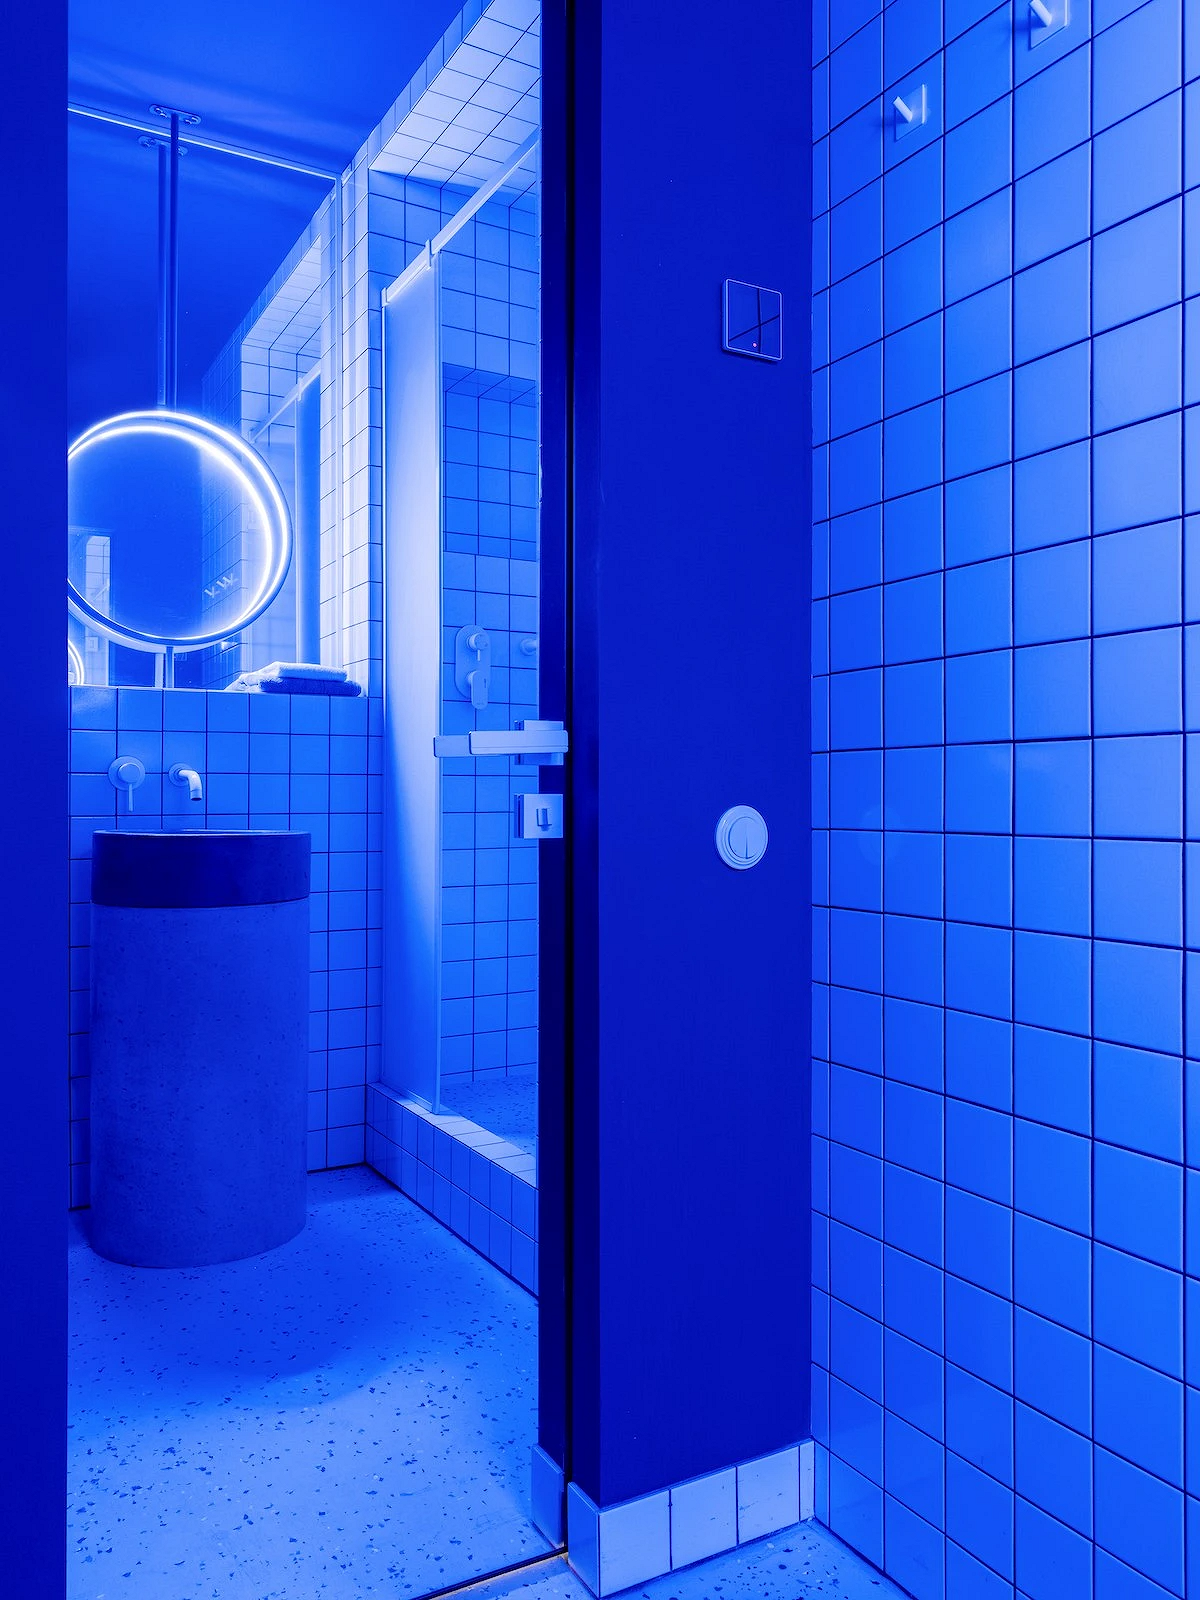 9 необычных решений для ванной комнаты из проектов дизайнеров15